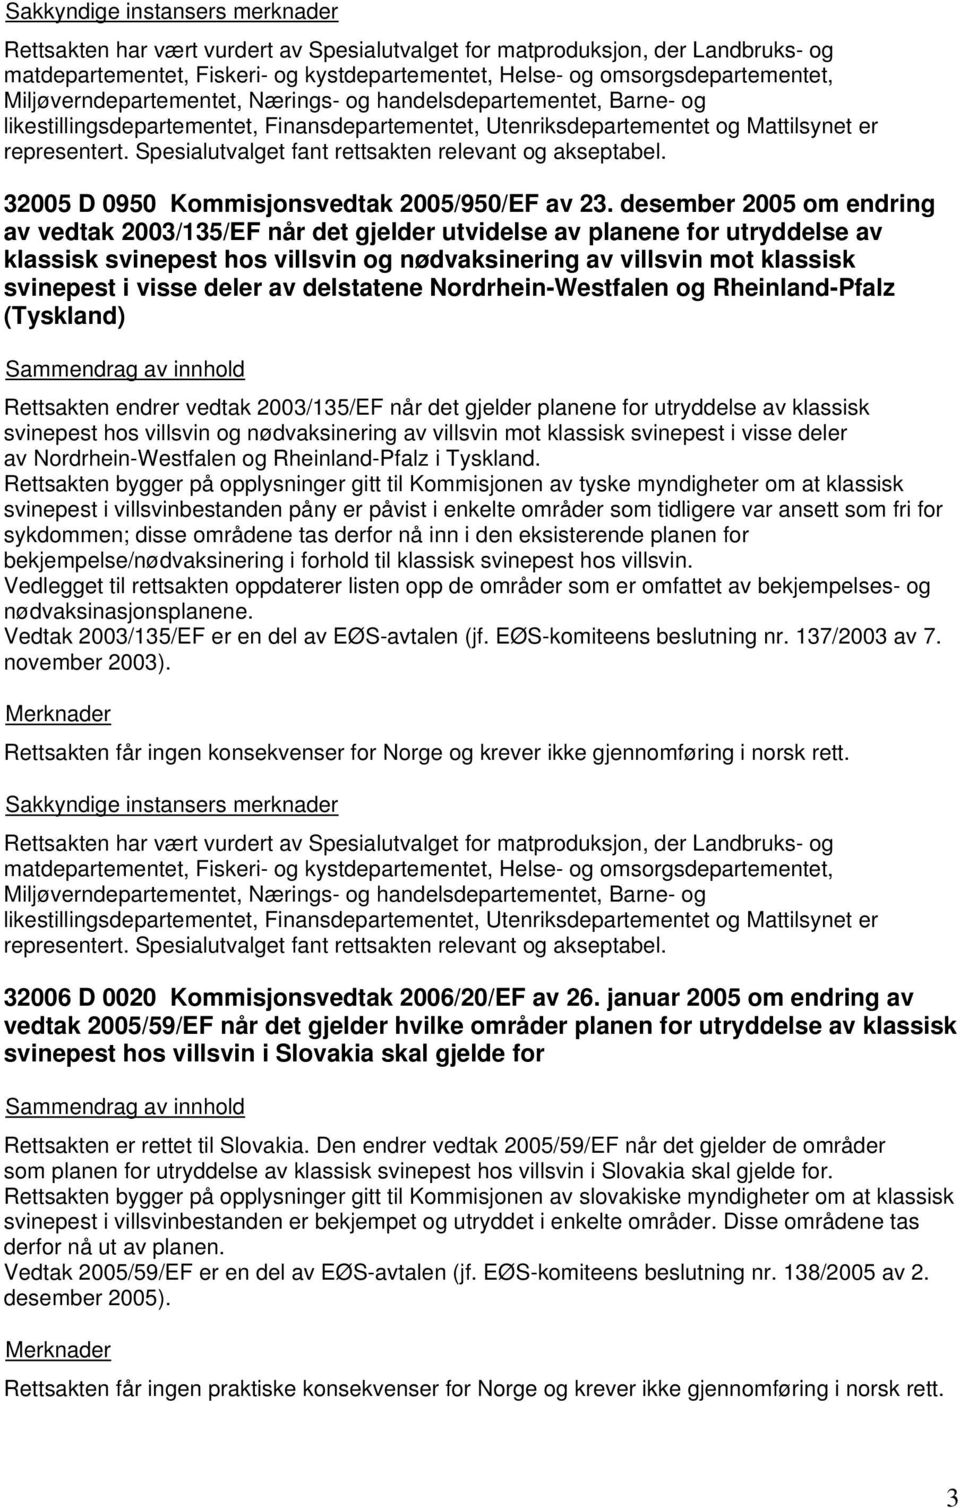 deler av delstatene Nordrhein-Westfalen og Rheinland-Pfalz (Tyskland) Rettsakten endrer vedtak 2003/135/EF når det gjelder planene for utryddelse av klassisk svinepest hos villsvin og nødvaksinering